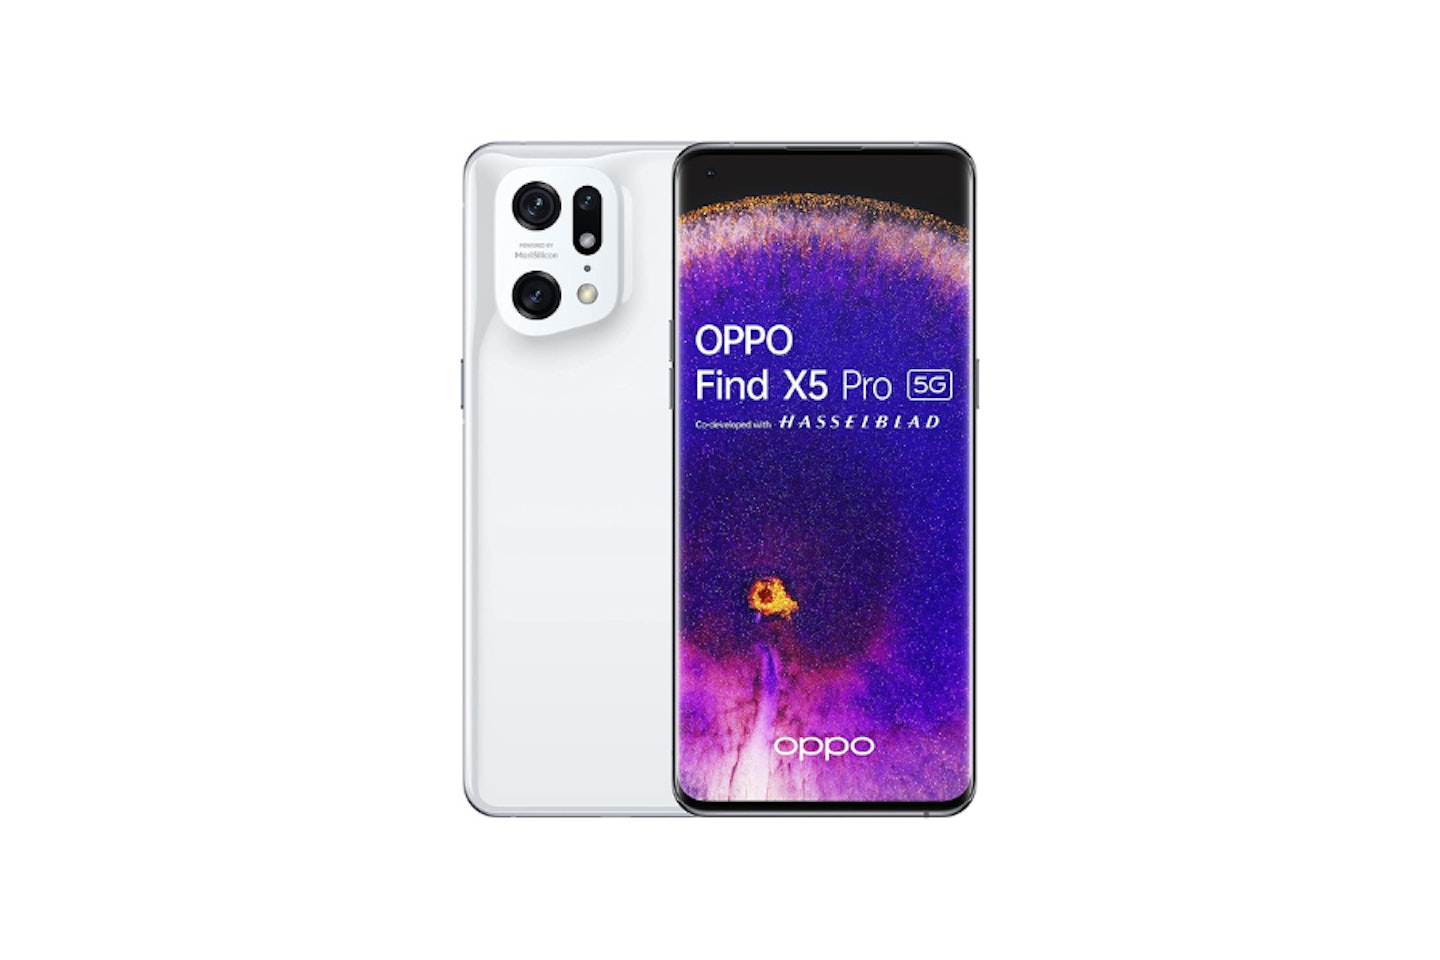 OPPO Find X5 Pro 5G - Smartphone